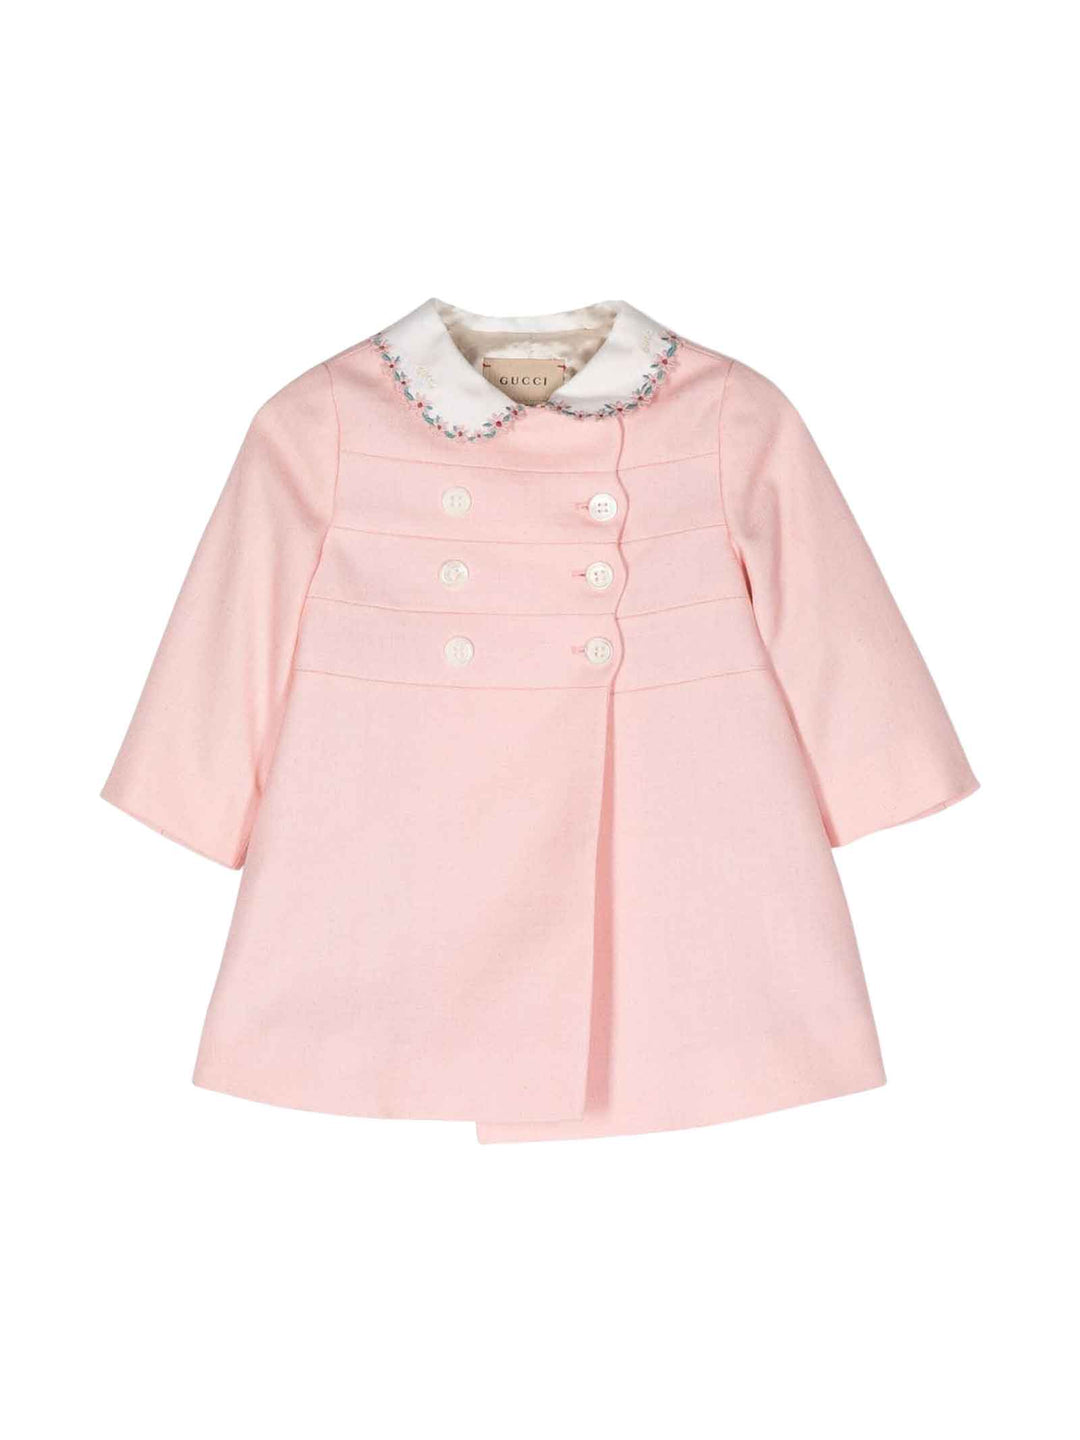 Cappotto rosa neonata